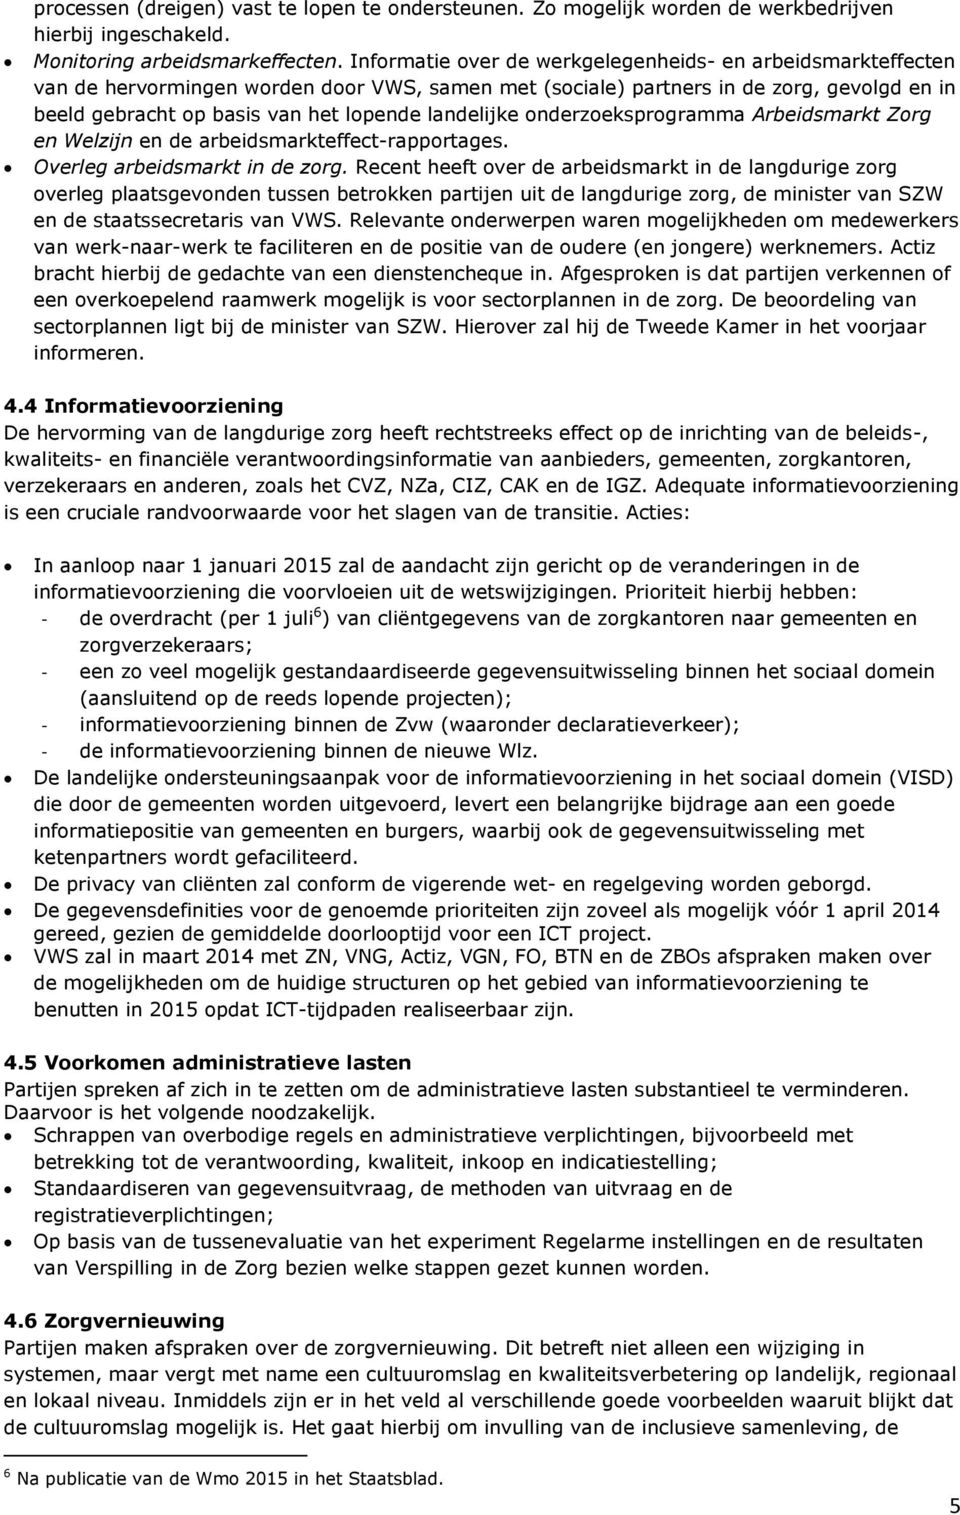 landelijke onderzoeksprogramma Arbeidsmarkt Zorg en Welzijn en de arbeidsmarkteffect-rapportages. Overleg arbeidsmarkt in de zorg.